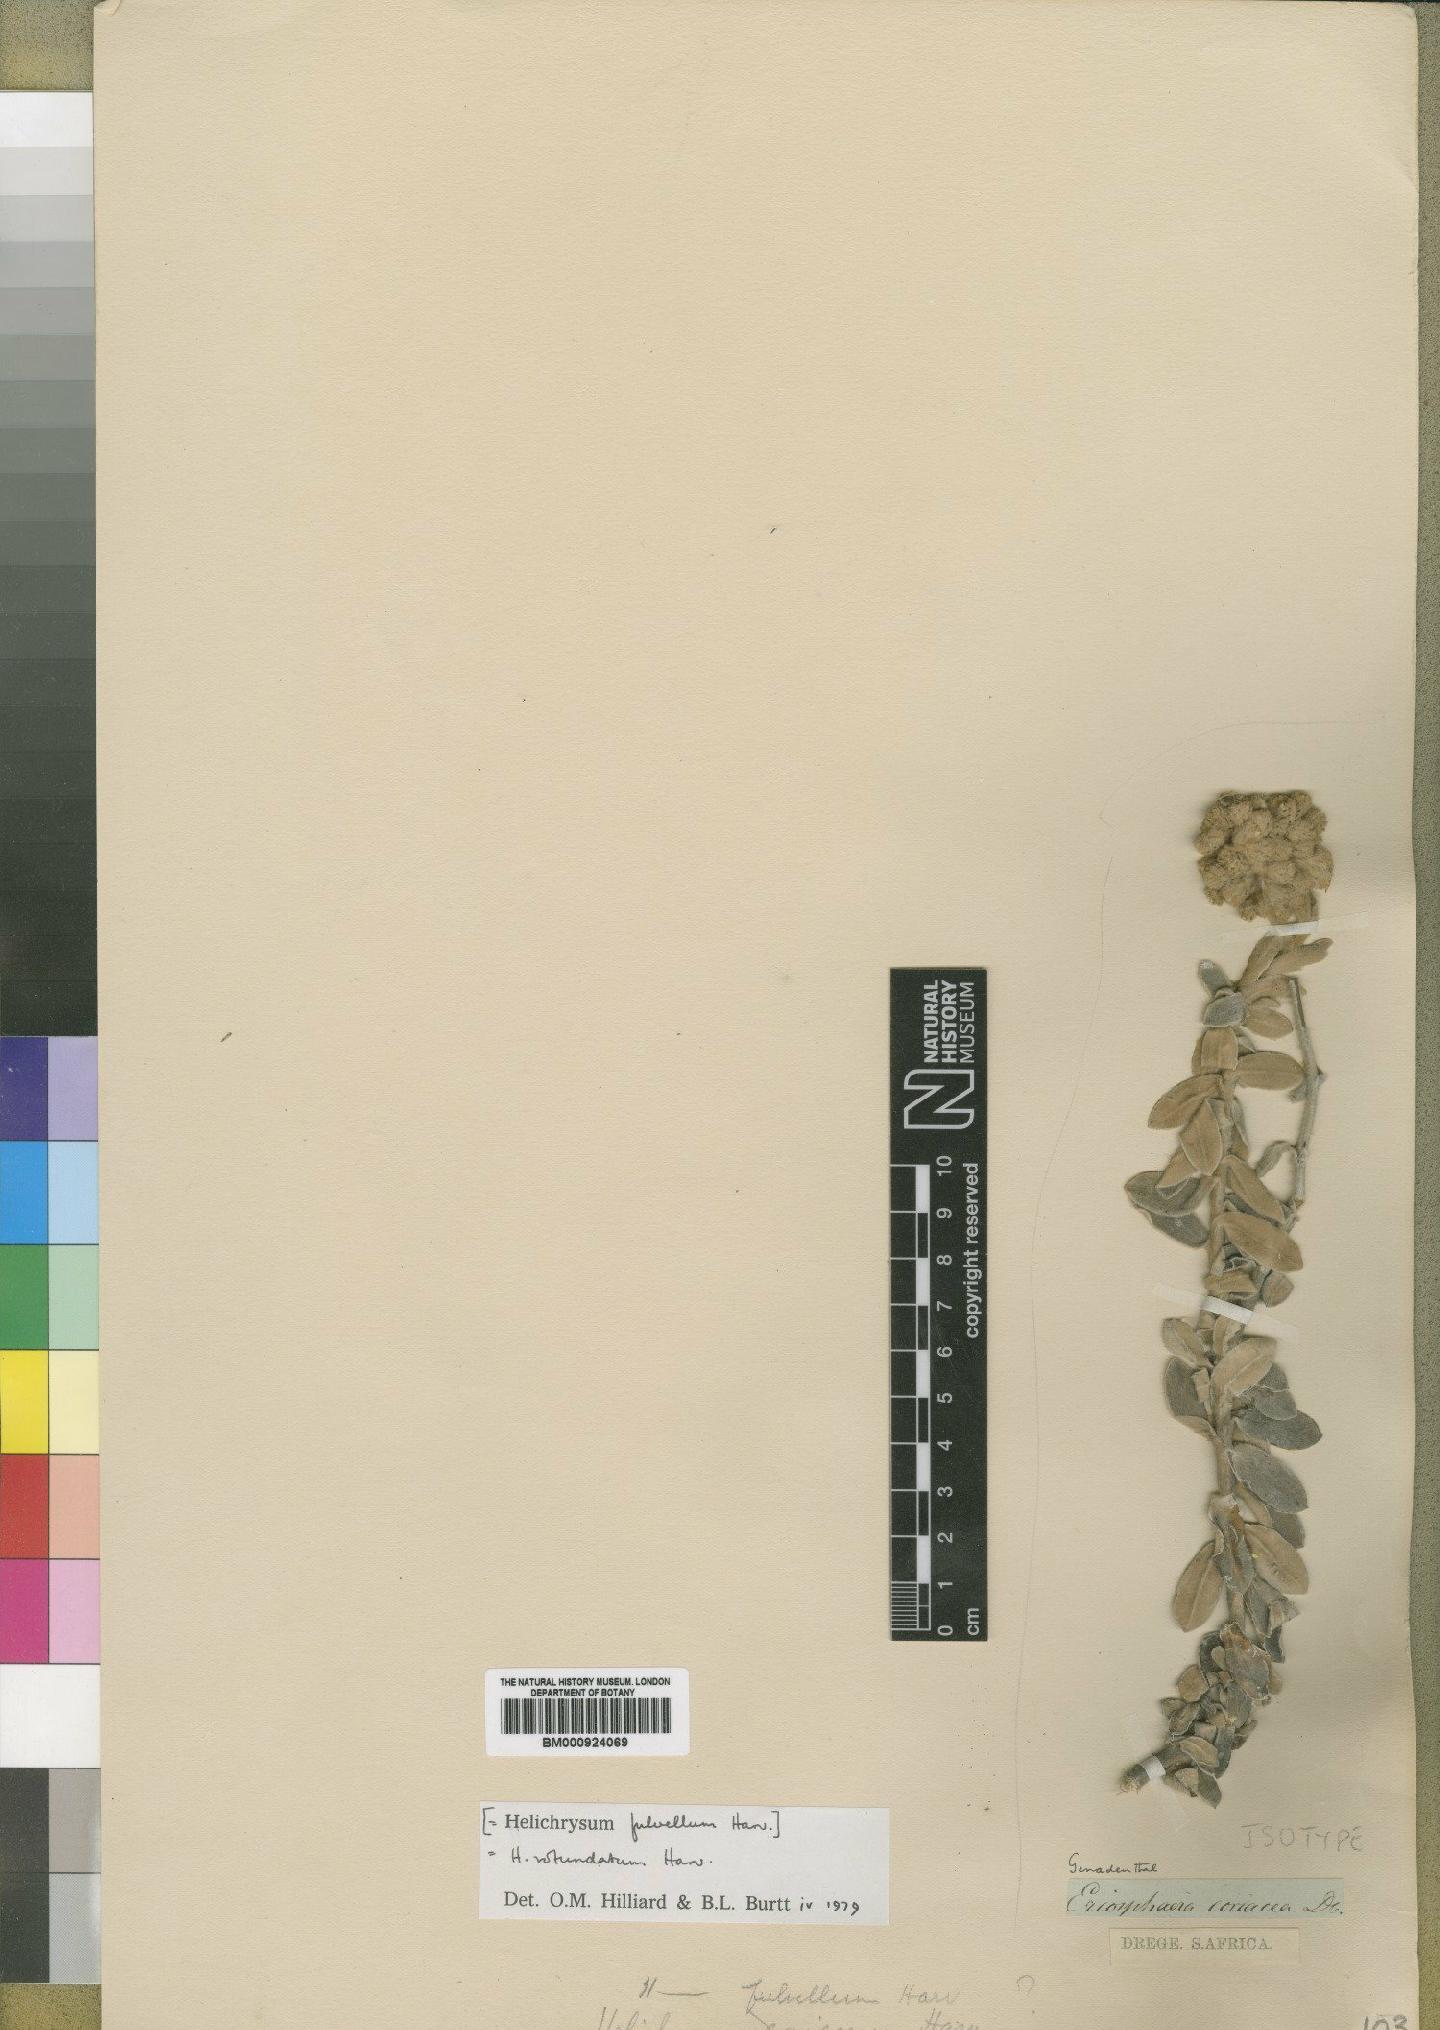 To NHMUK collection (Helichrysum rotundatum Harv.; Isotype; NHMUK:ecatalogue:4529097)